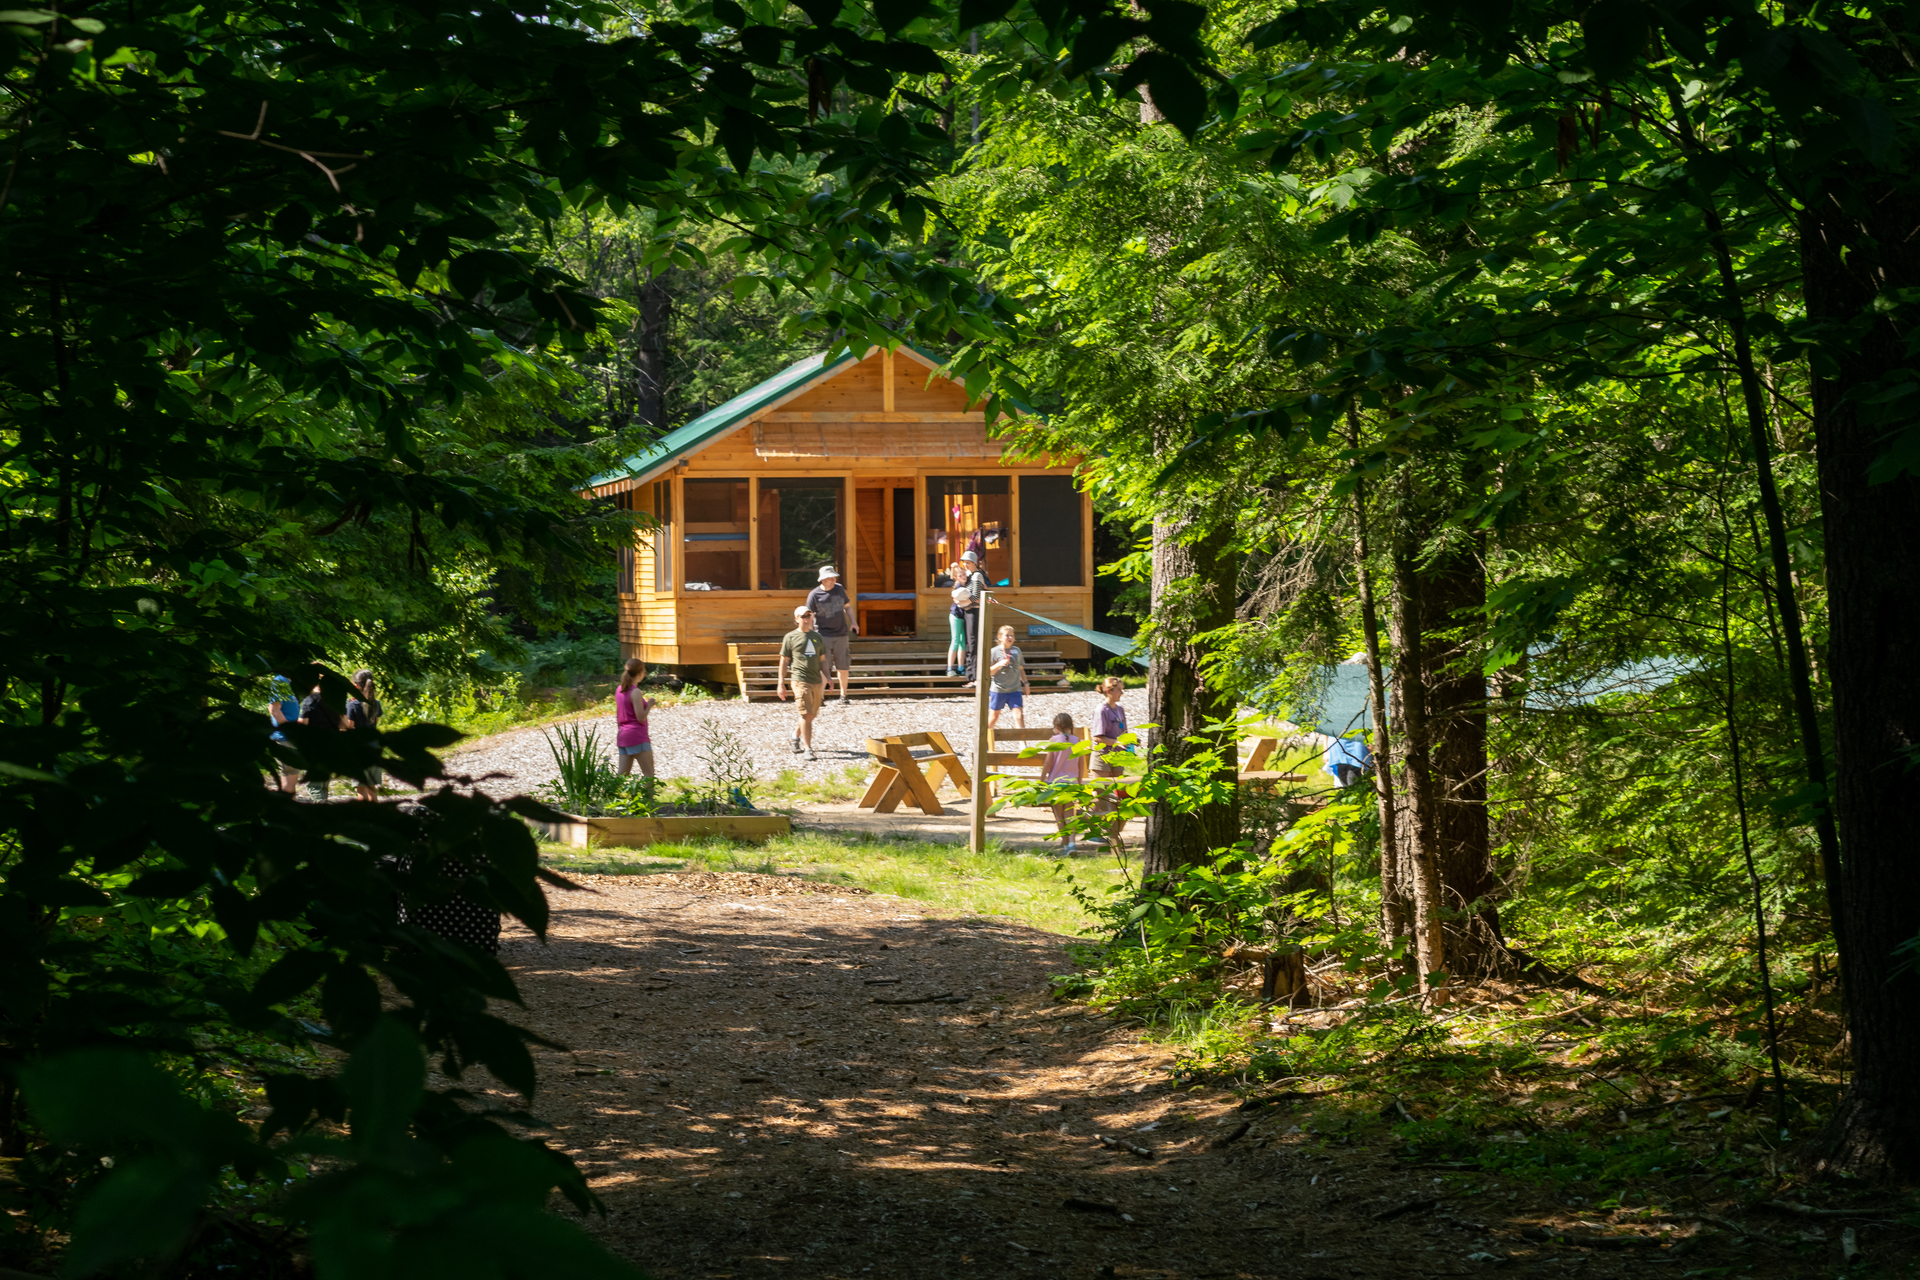 wooden cabin seen through a forest